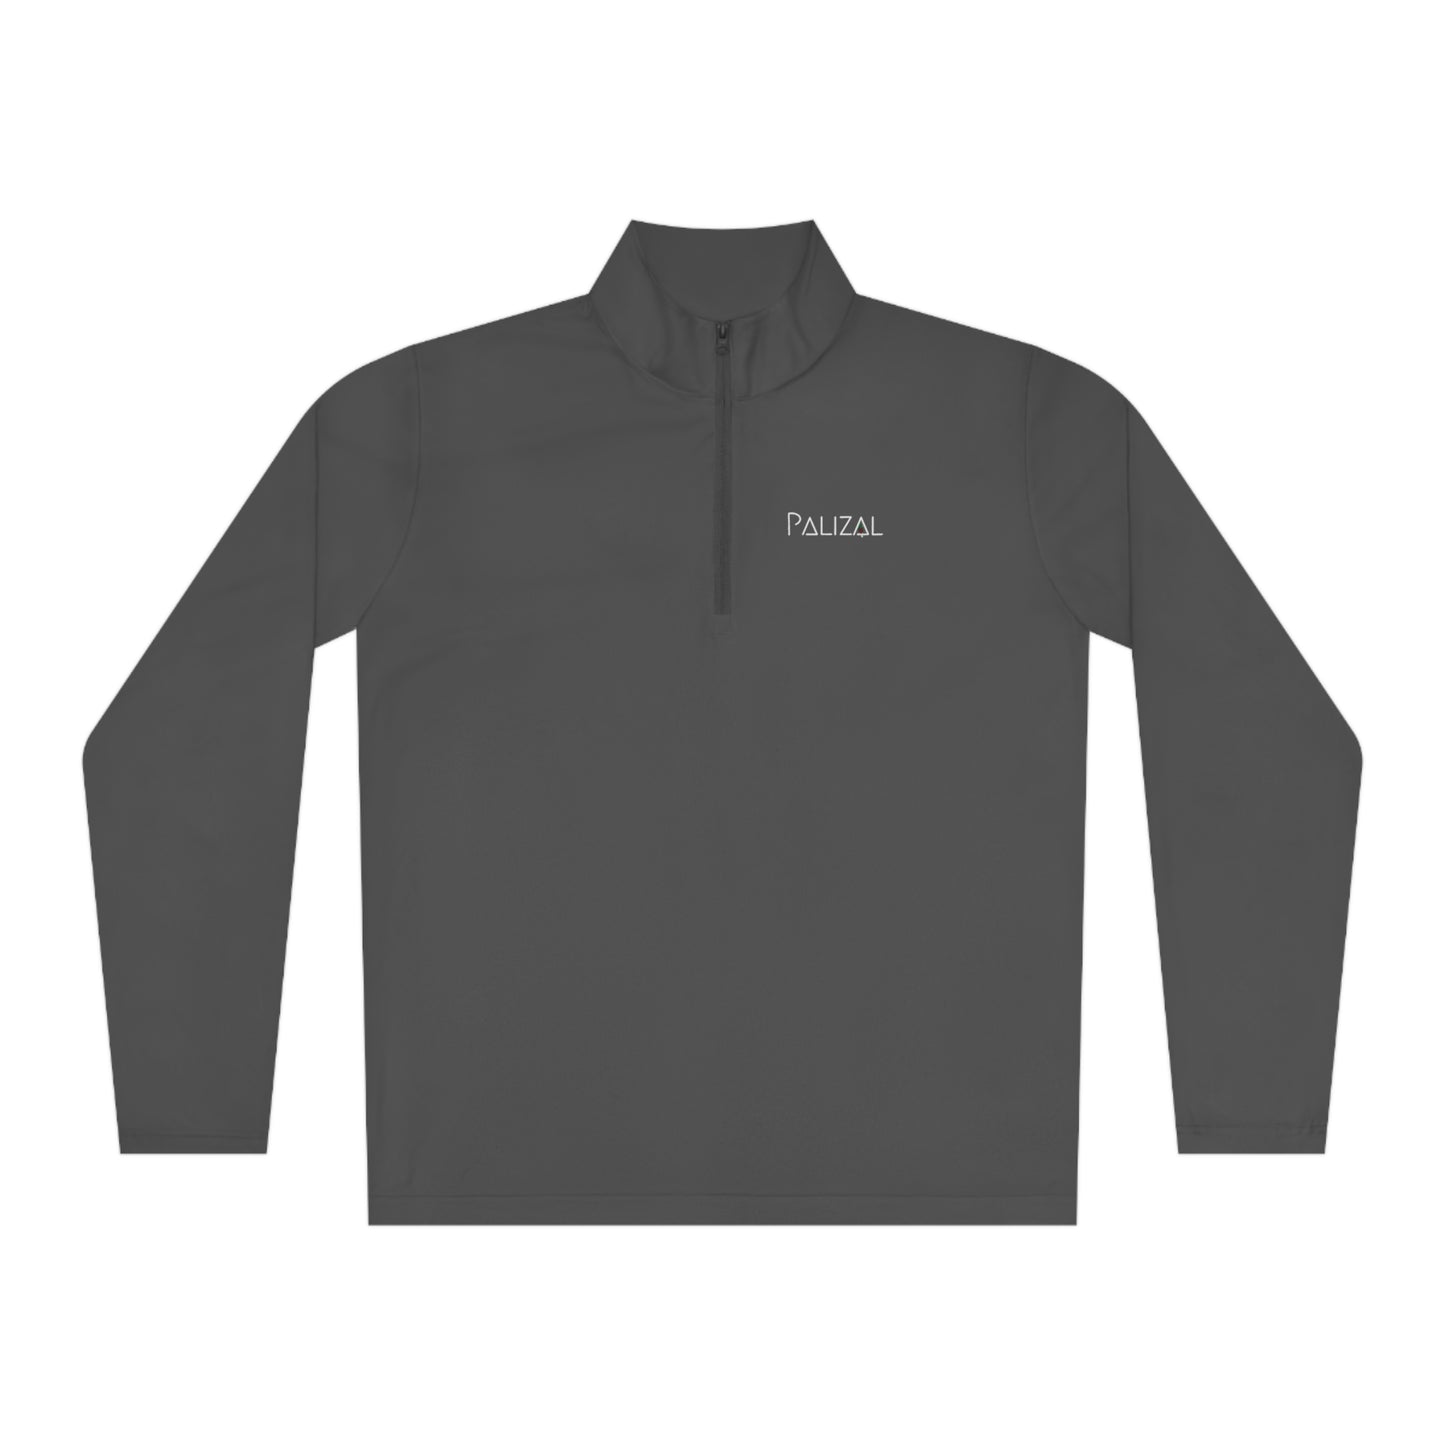 AOTW Pullover (Unisex Back Design)